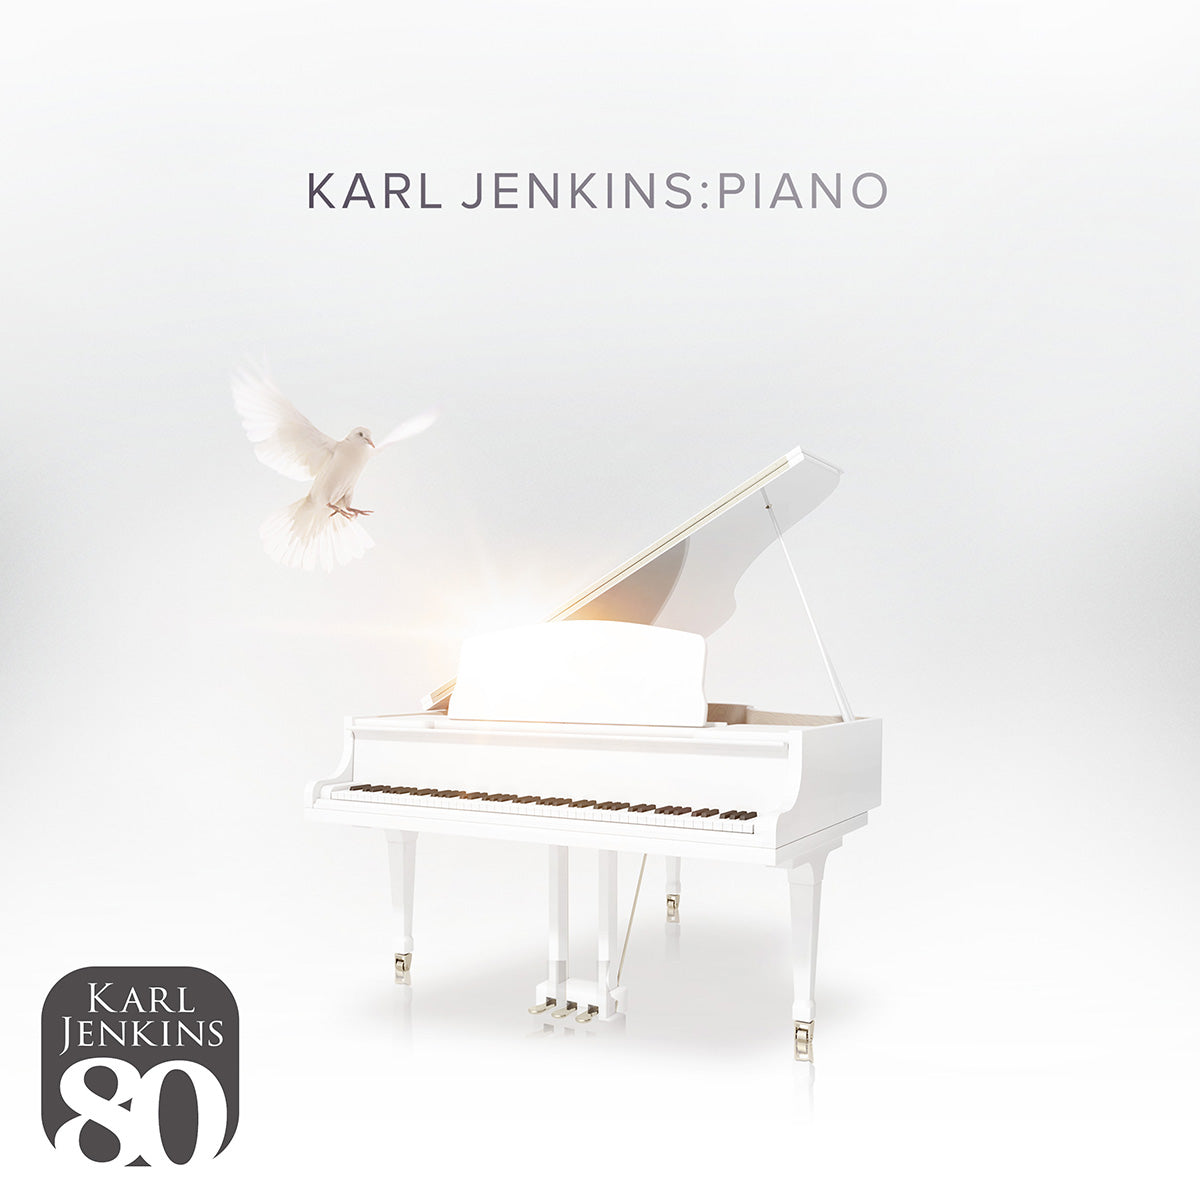 Karl Jenkins - Karl Jenkins - Piano: LP